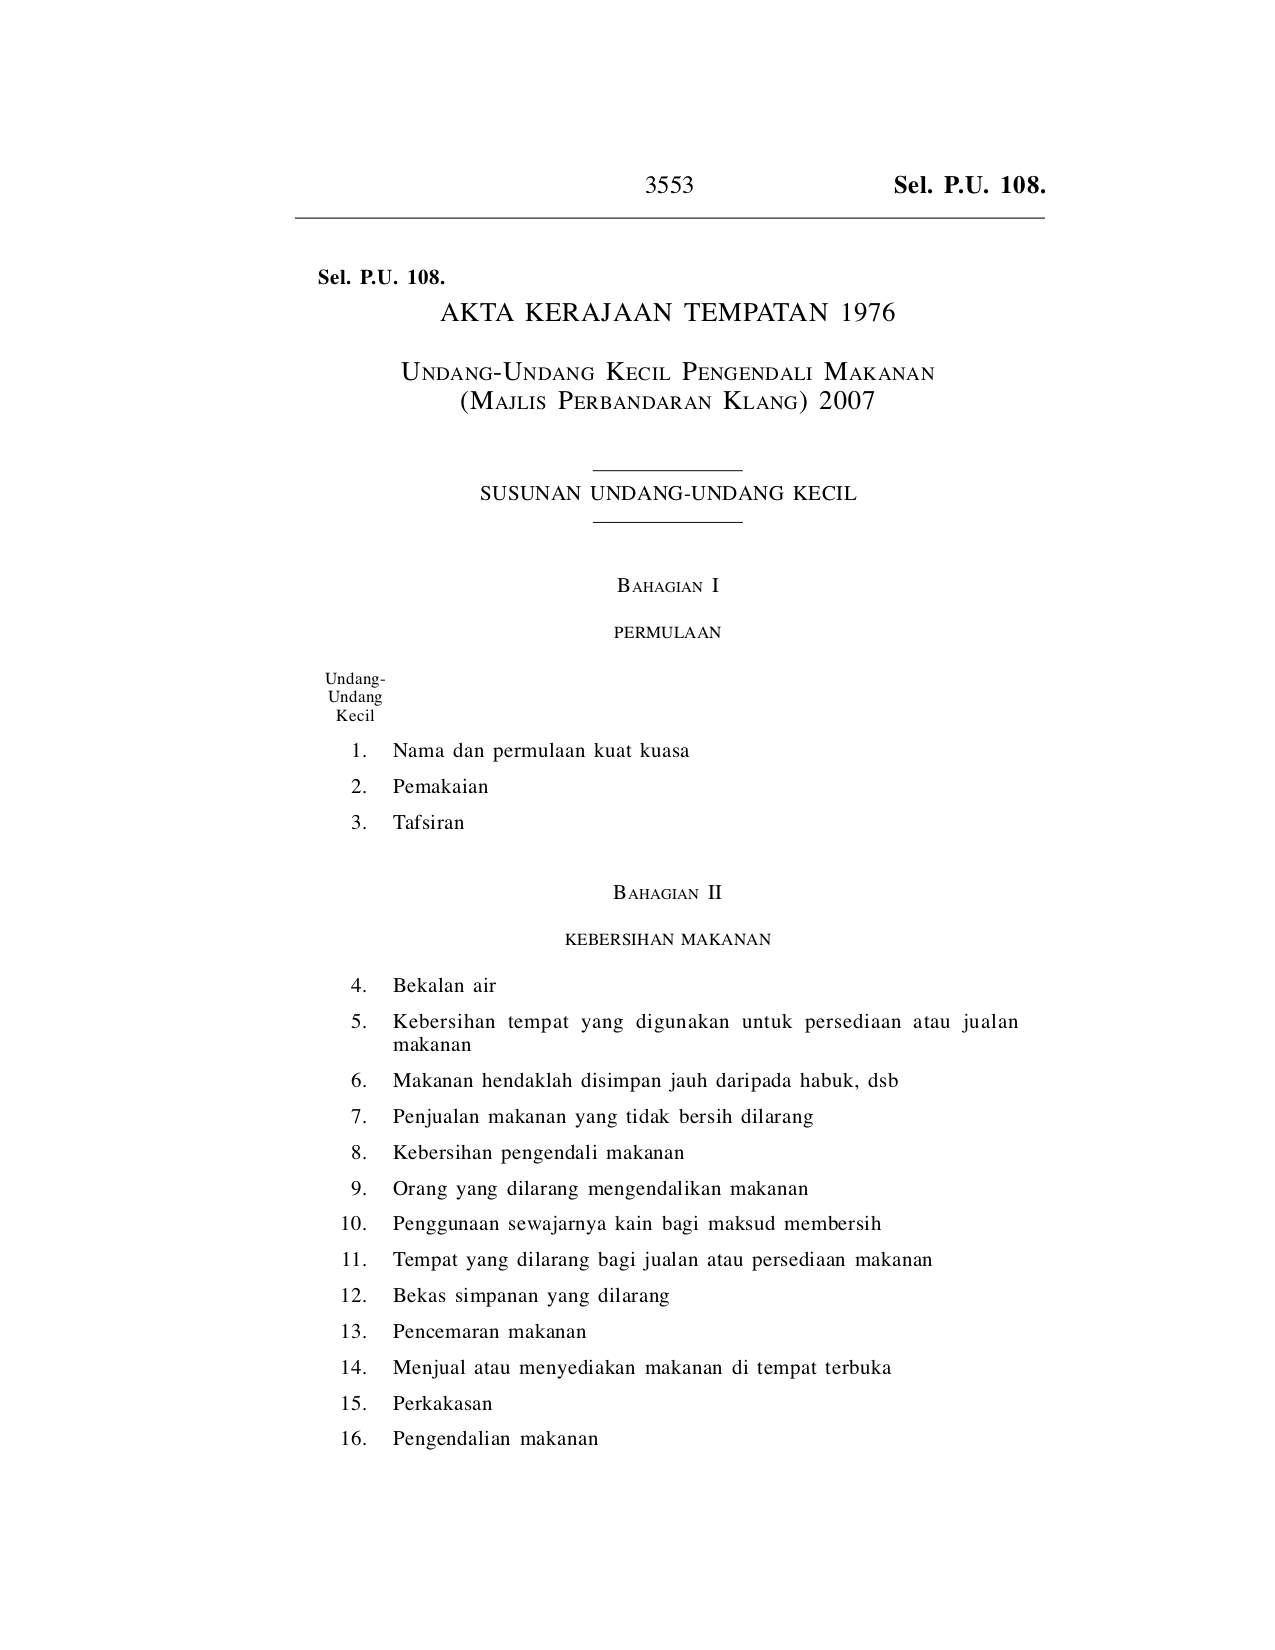 Undang-Undang Kecil Pengendali Makanan (Majlis Perbandaran Klang) 2007 - Akta Kerajaan Tempatan 1976